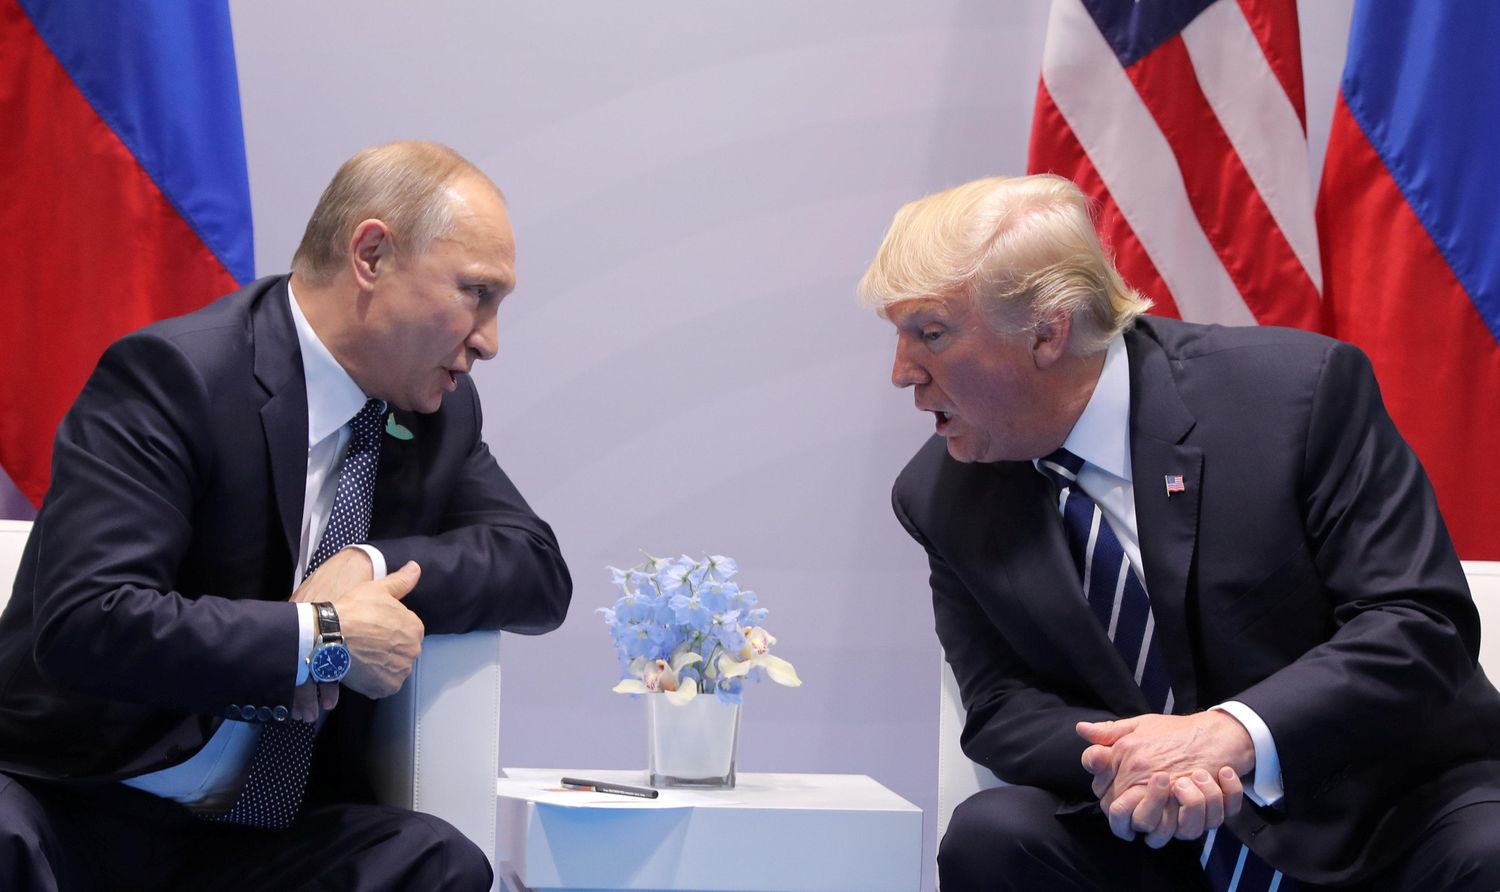 Трамп обсудит с Путиным Украину на саммите G20